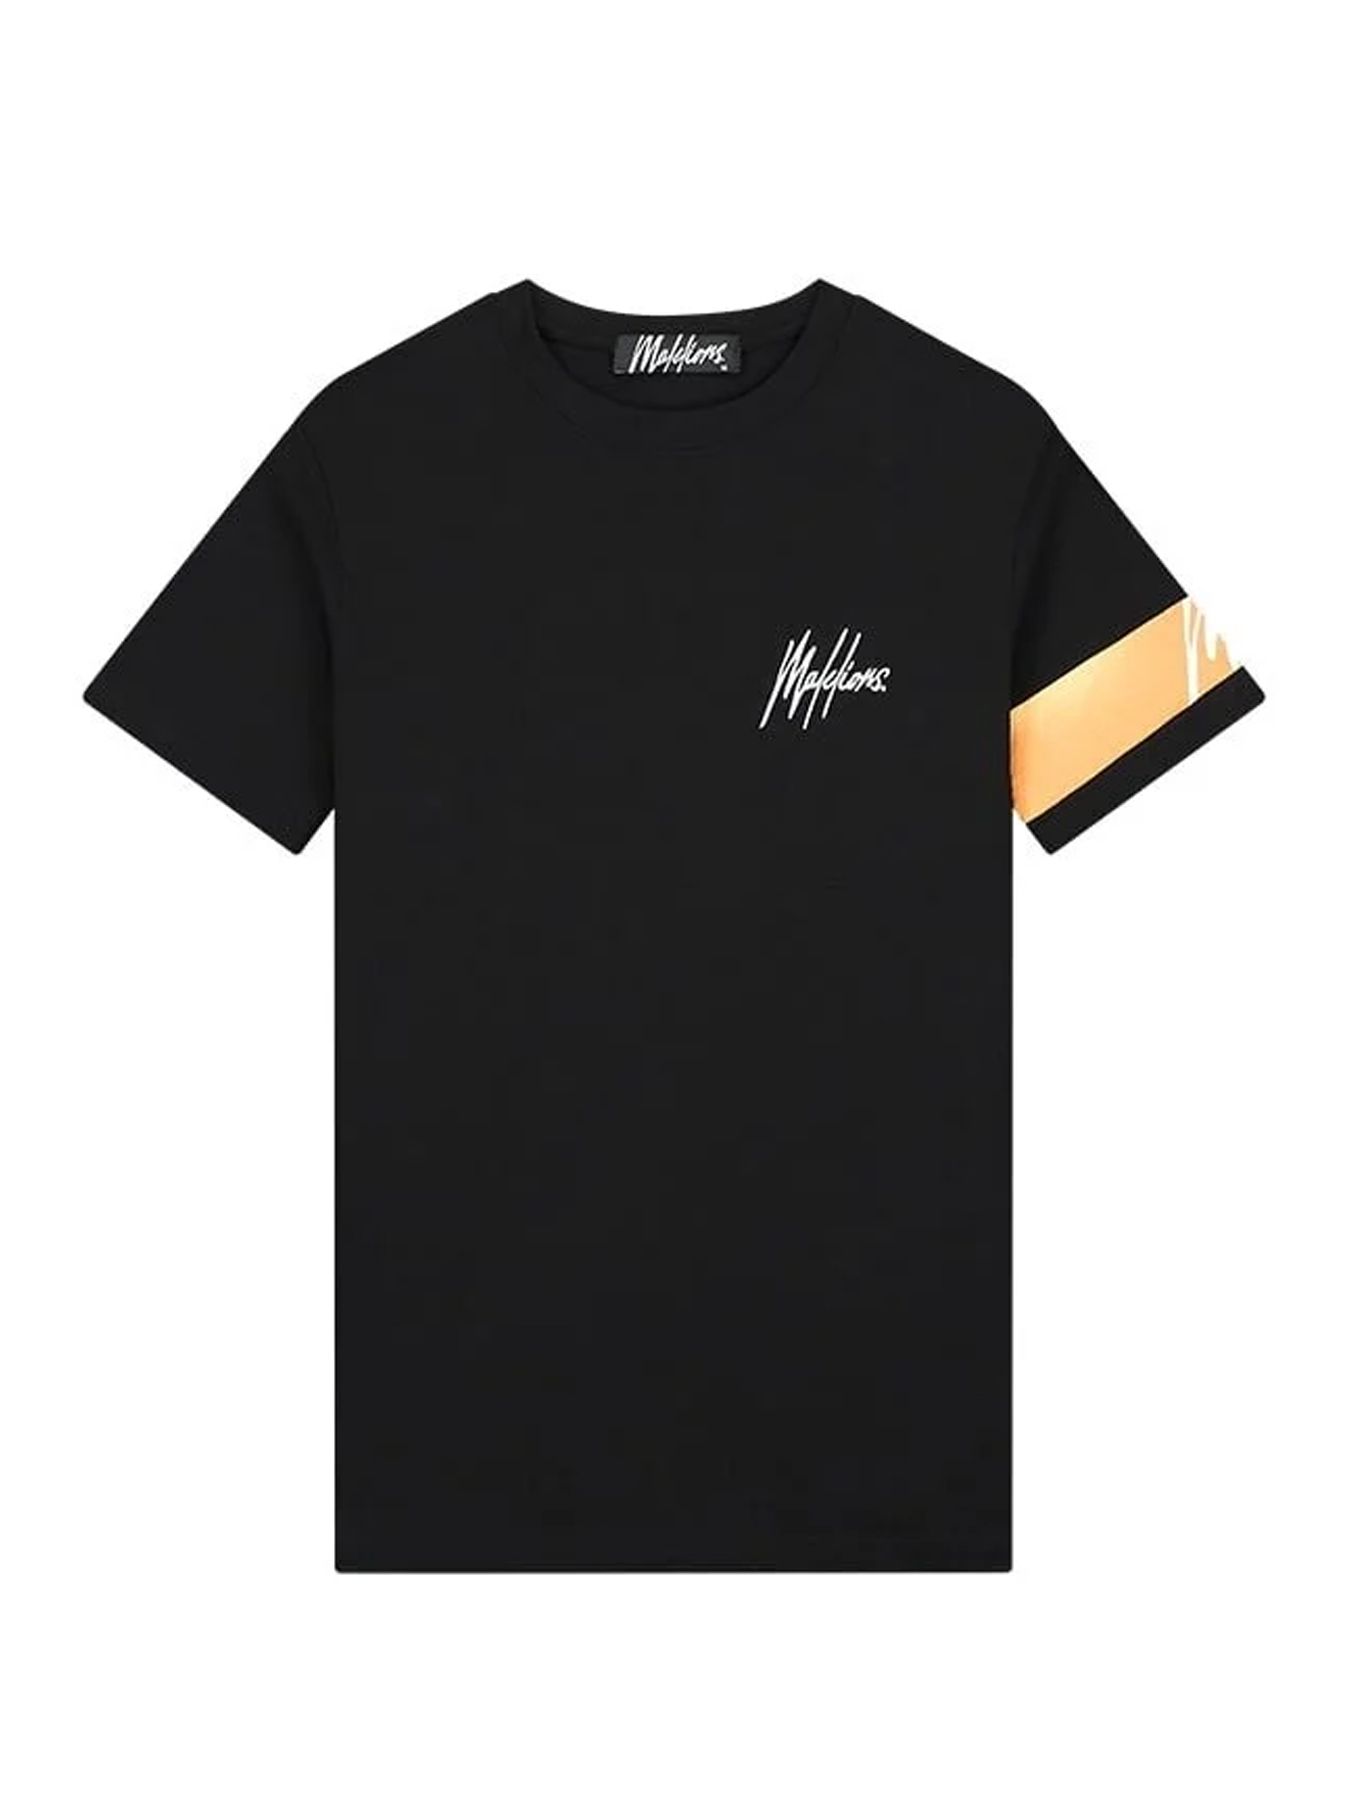 Malelions Men Captain t-shirt Black/Peach 00109020-932